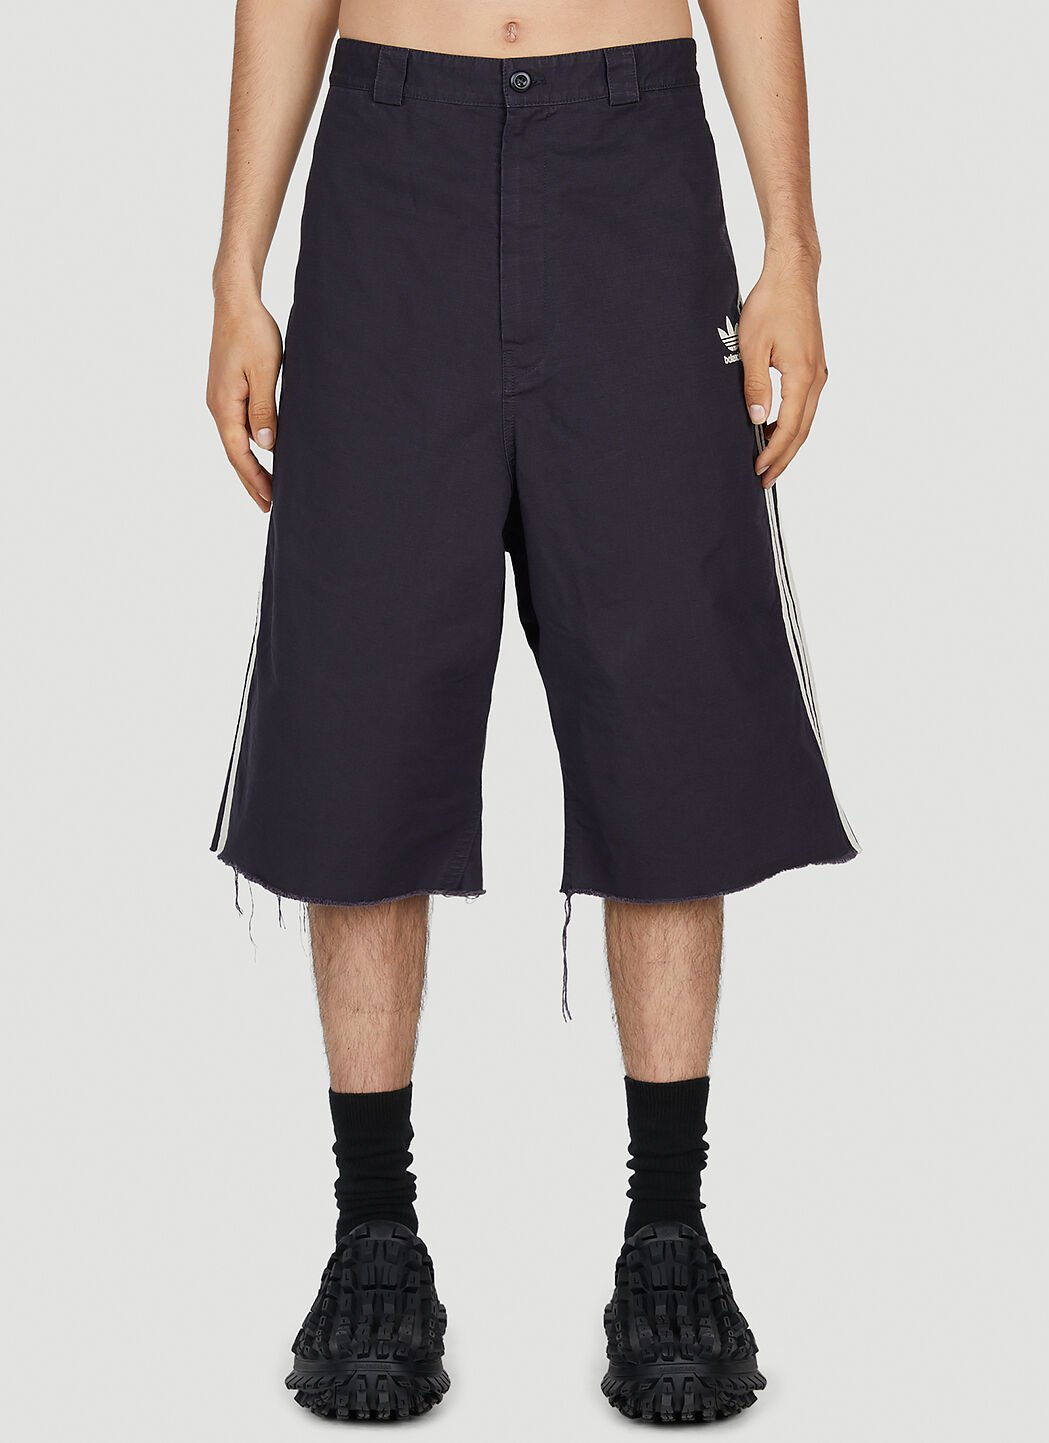 Balenciaga x adidas 宽松牛仔短裤 蓝色 axb0151016